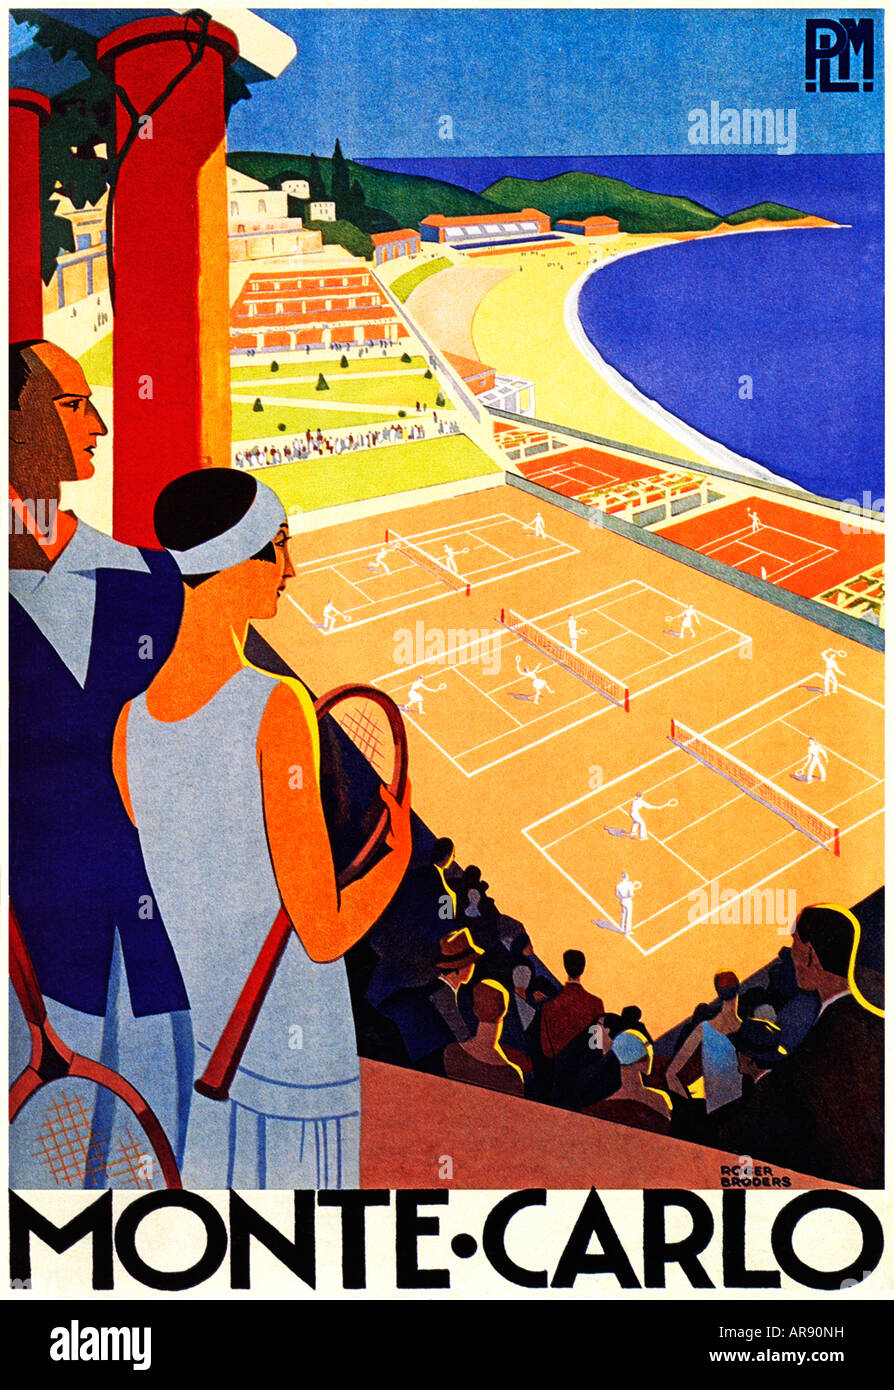 Poster classico Art Deco di Monte Carlo Tennis pubblicato dalla compagnia ferroviaria francese PLM per le attrazioni turistiche di Monaco e i suoi campi da tennis Foto Stock